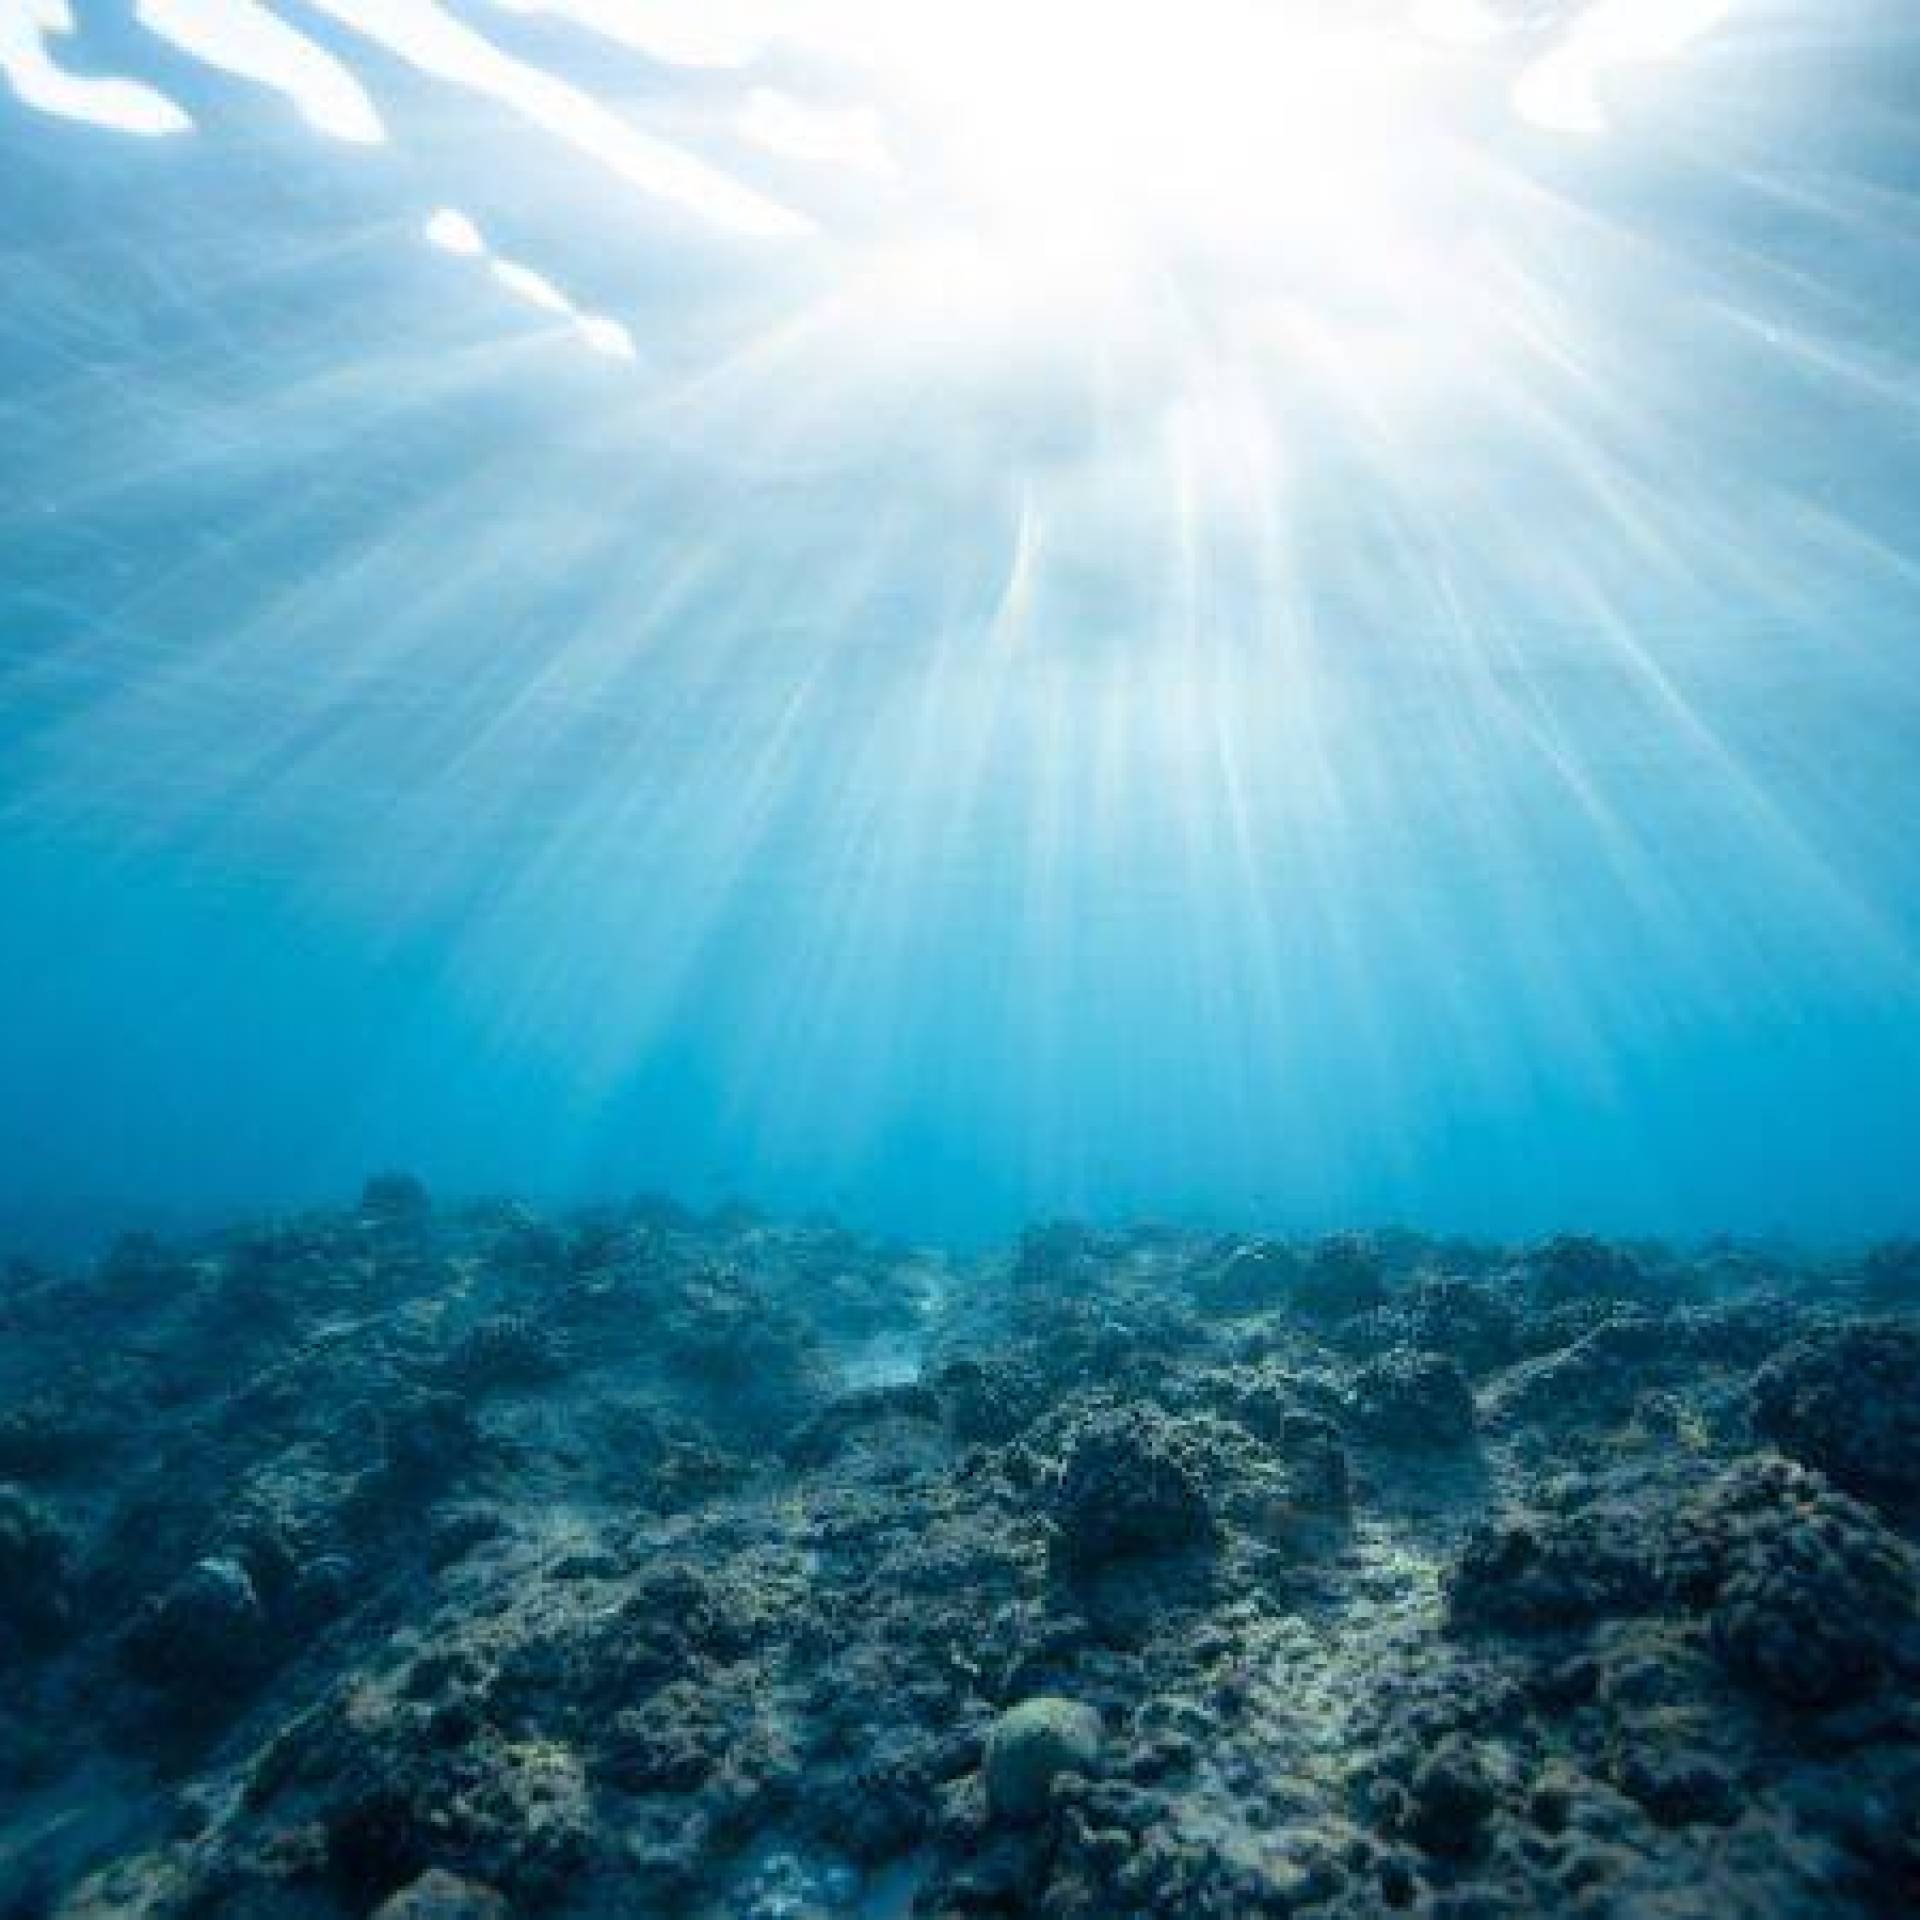 Zmiany klimatu a morza i oceany - najważniejsze wyzwania i zagrożenia dla środowiska morskiego